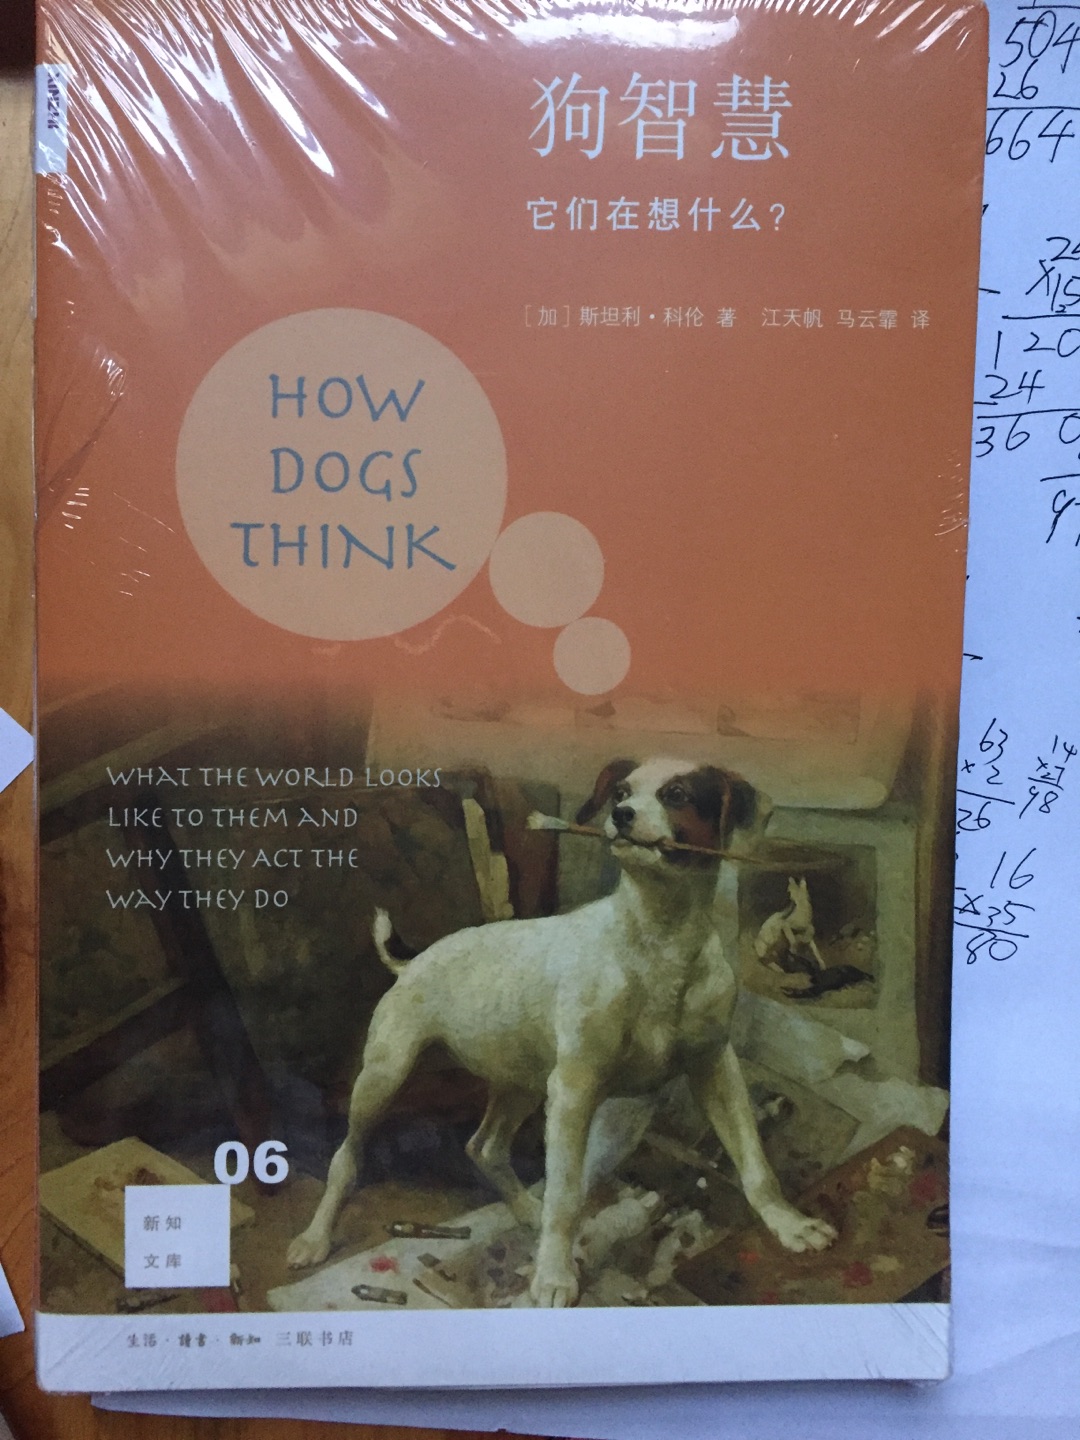 新知文库，不是每本必读，但是每本必买，序号06：狗智慧第二版，也不例外。质量、内容、选题、纸张等等，无一不是上乘之作。